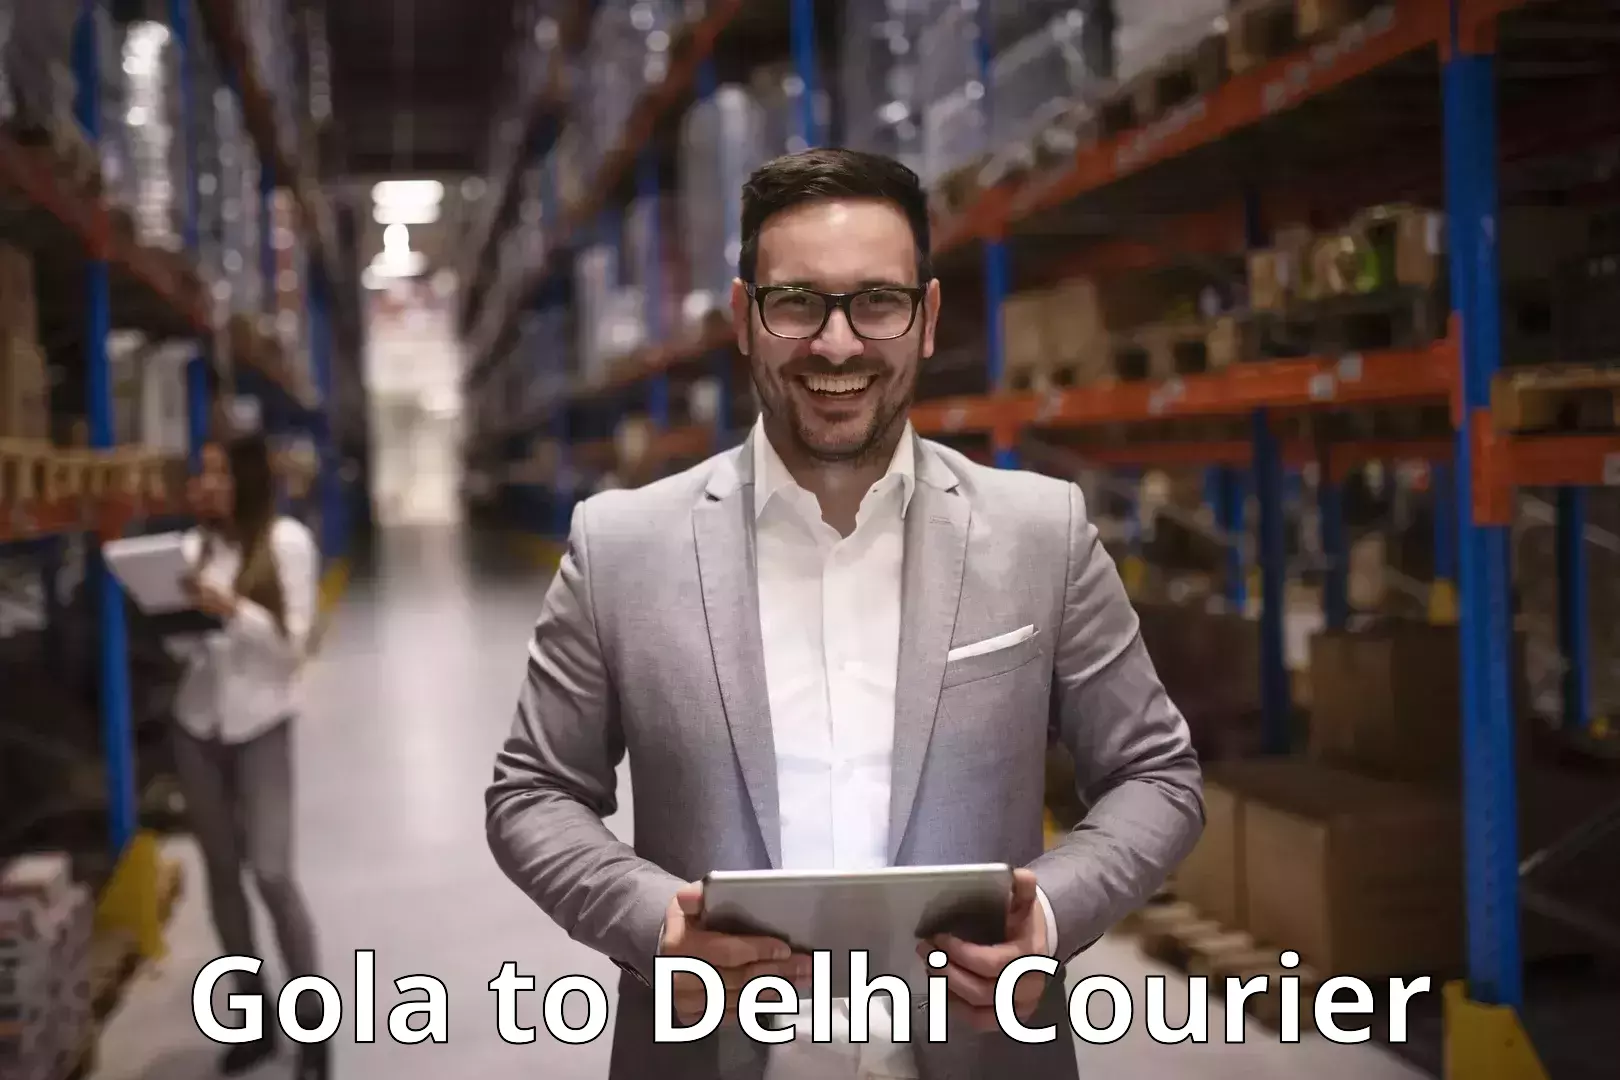 Courier service comparison Gola to Delhi Technological University DTU